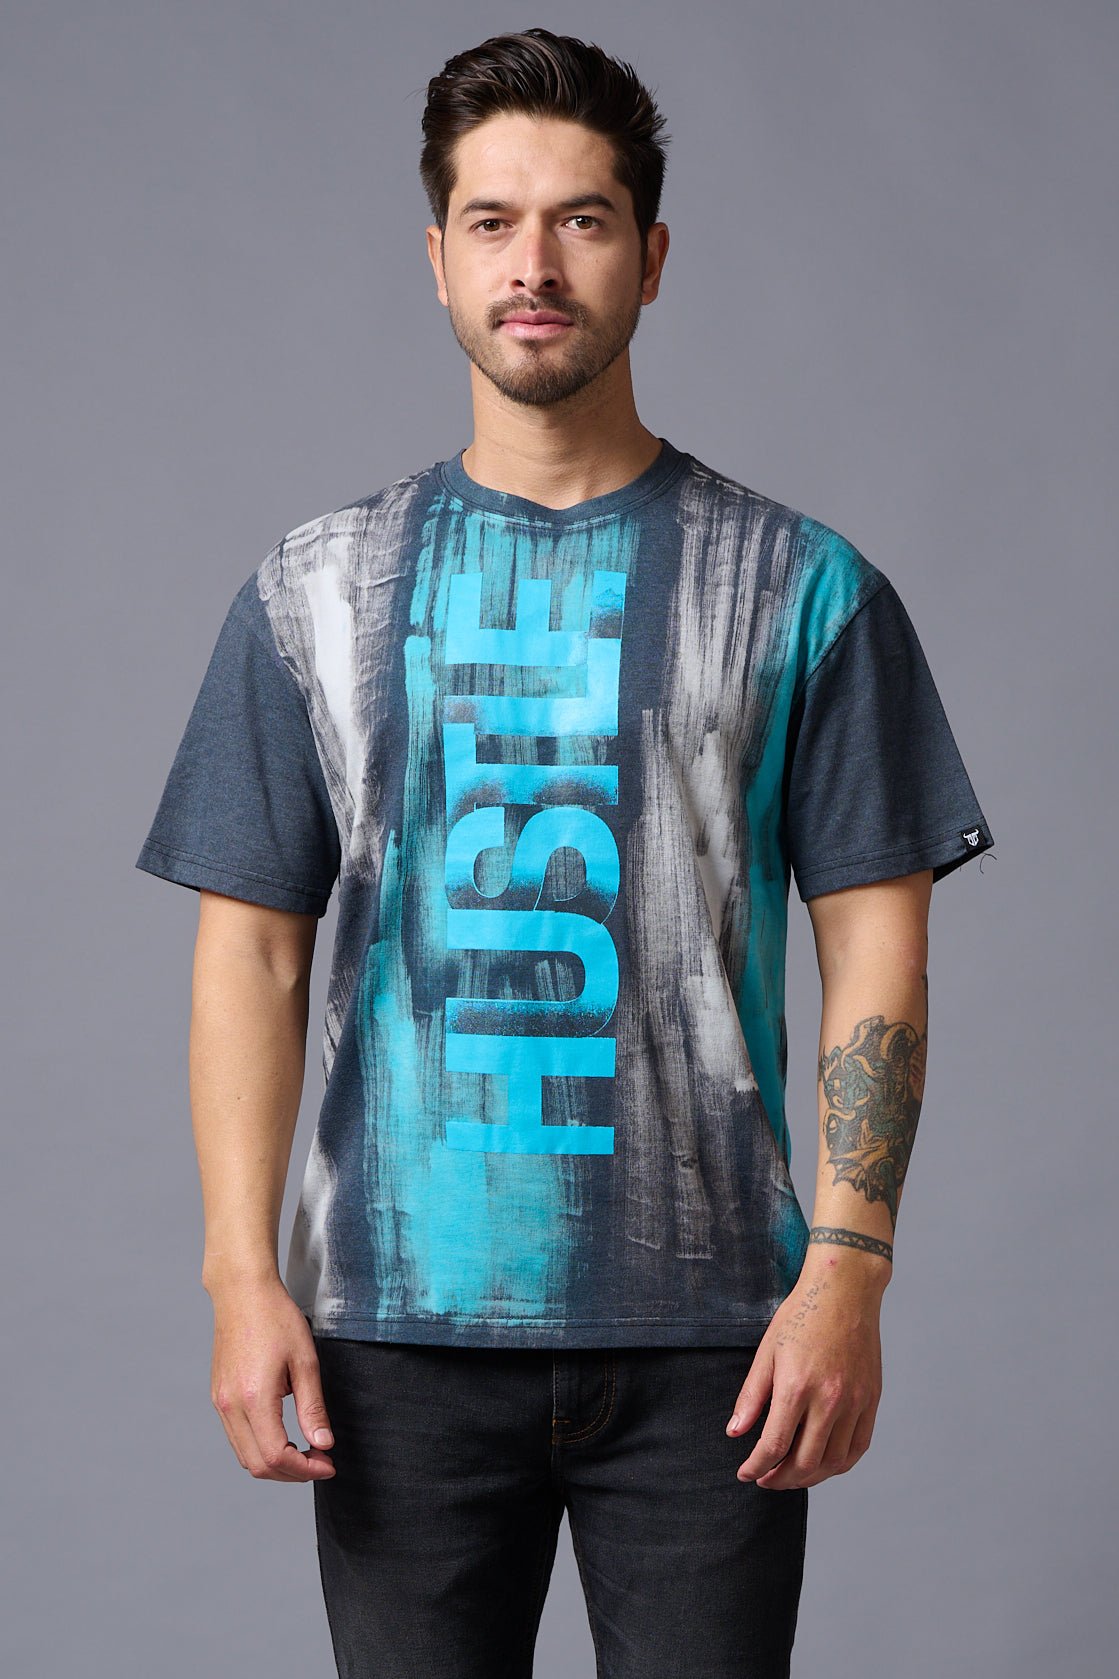 Hustle Printed tye dye brush print Oversized T-Shirt for Men - Go Devil